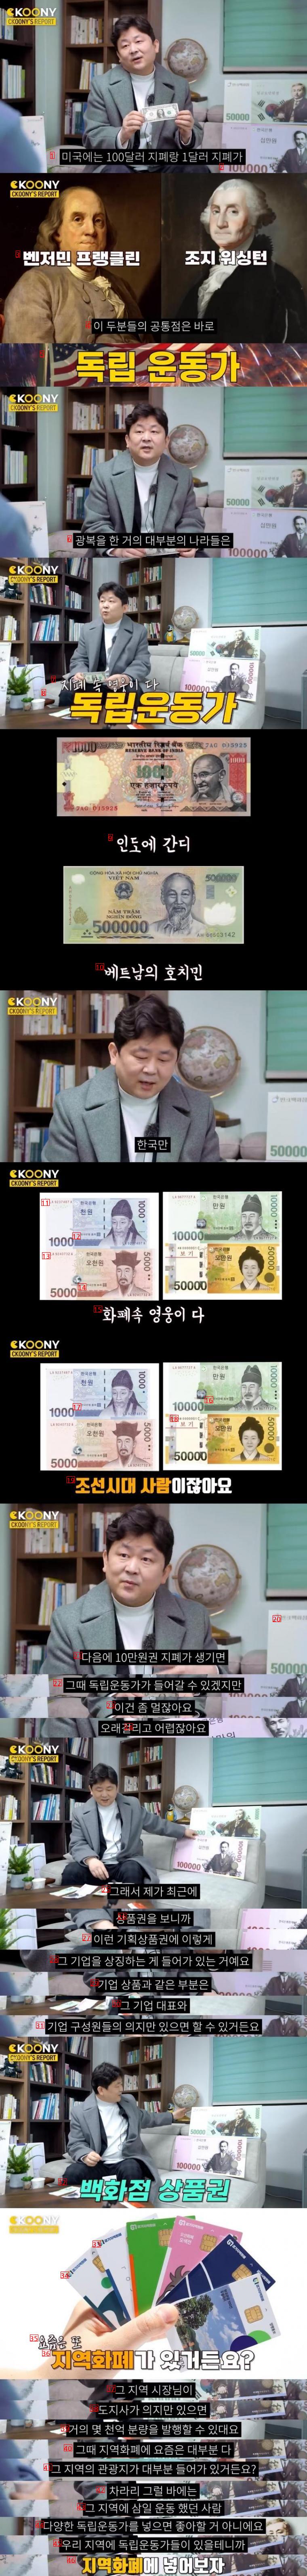 한국만 다른 화폐 모델